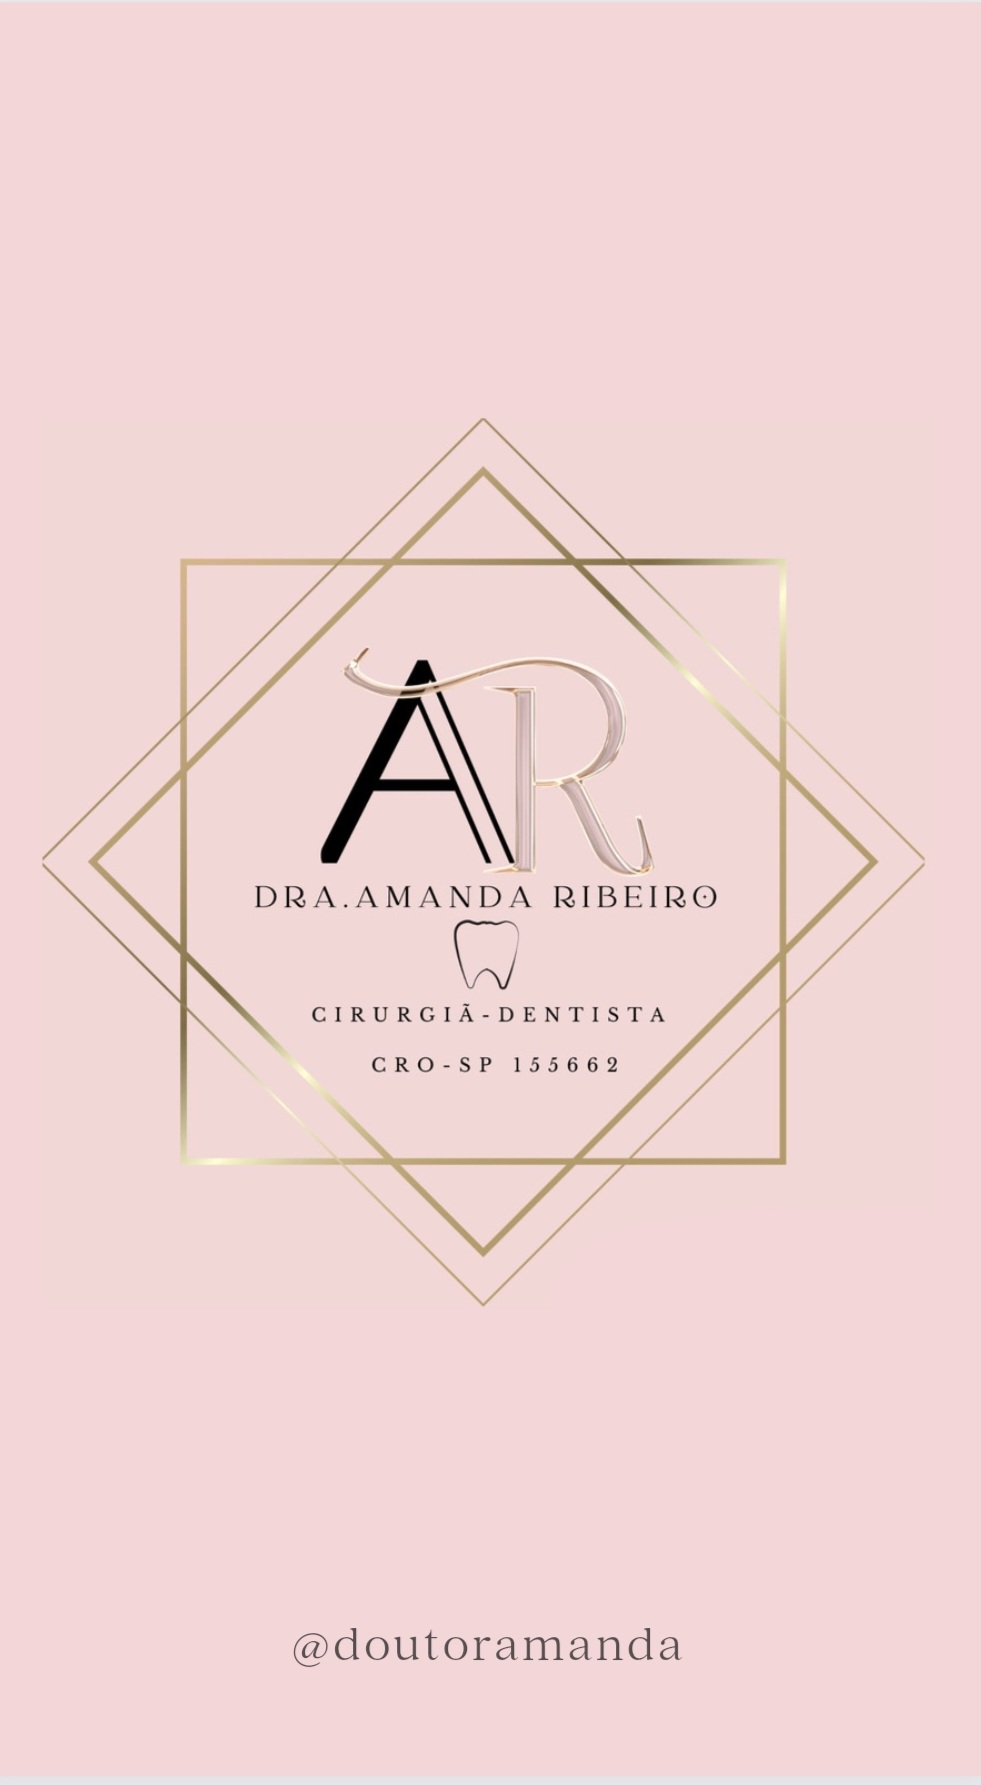 \)

DRA.AMANDA RIBEIRO

V

CIRURGIA-DENTISTA

CRO-SP 155662

\/

@doutoramanda